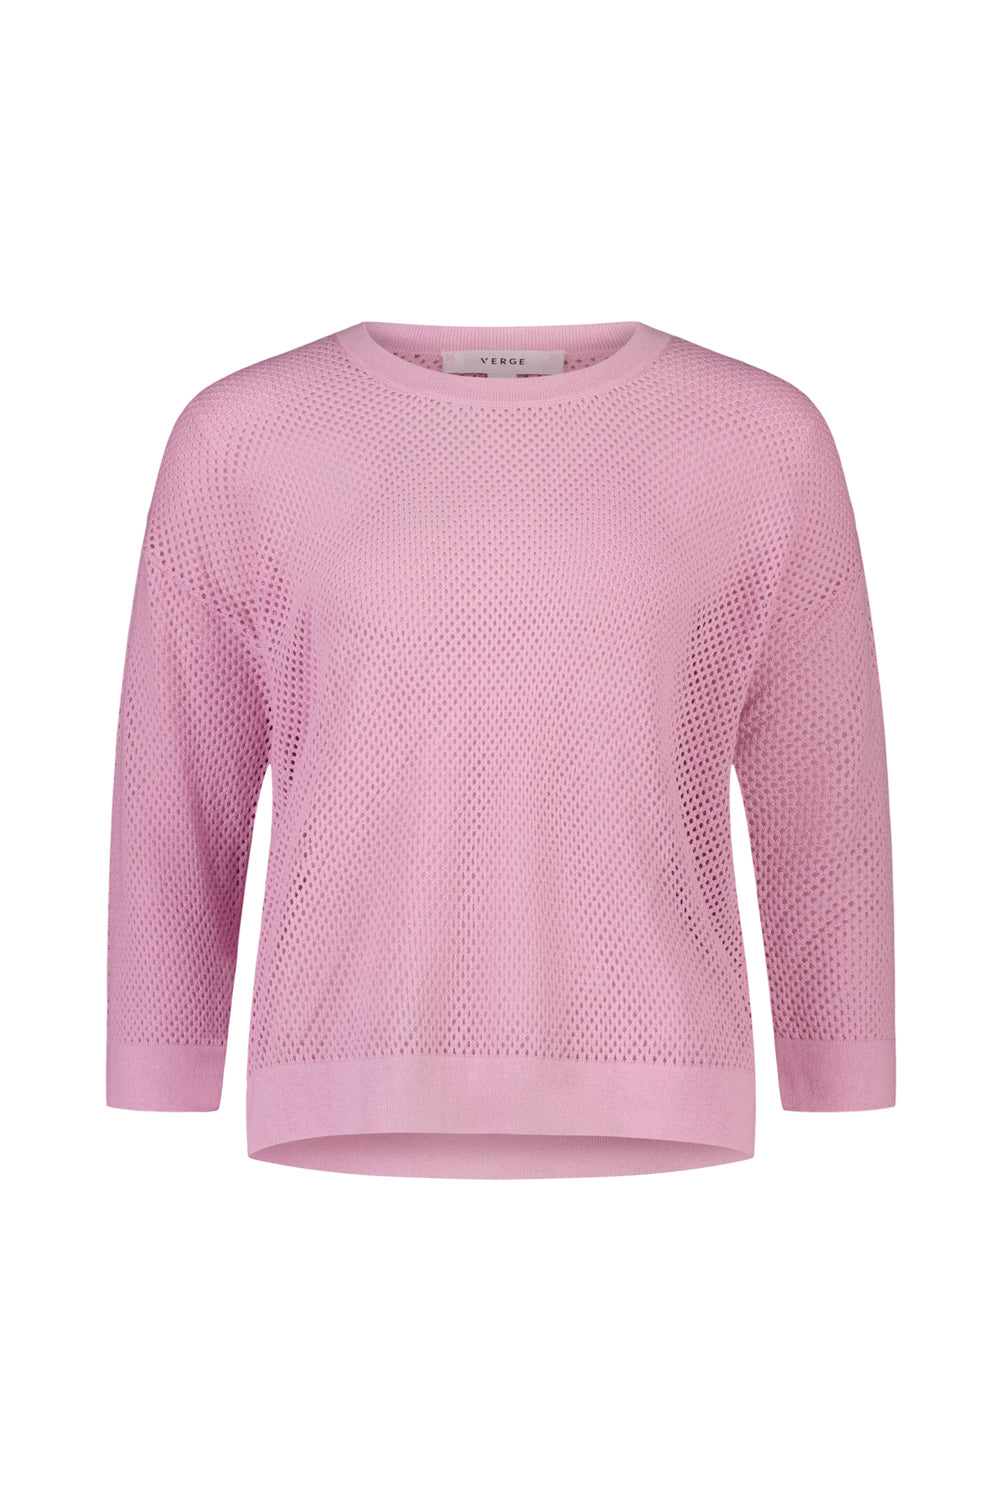 Cedar Sweater - Flamingo - Sweater VERGE